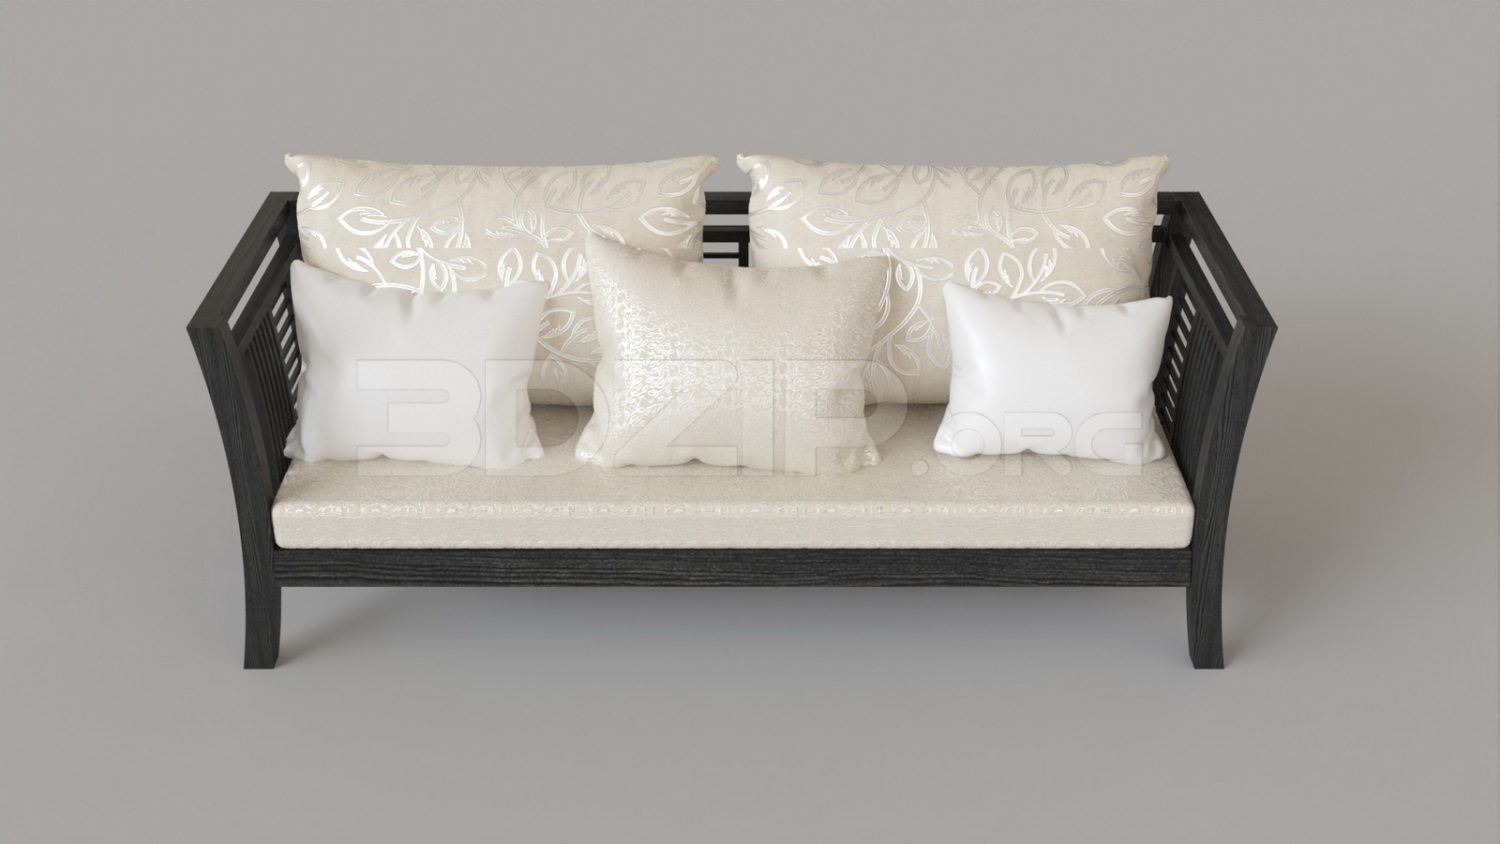 5319. Free 3D Sofa Model Download